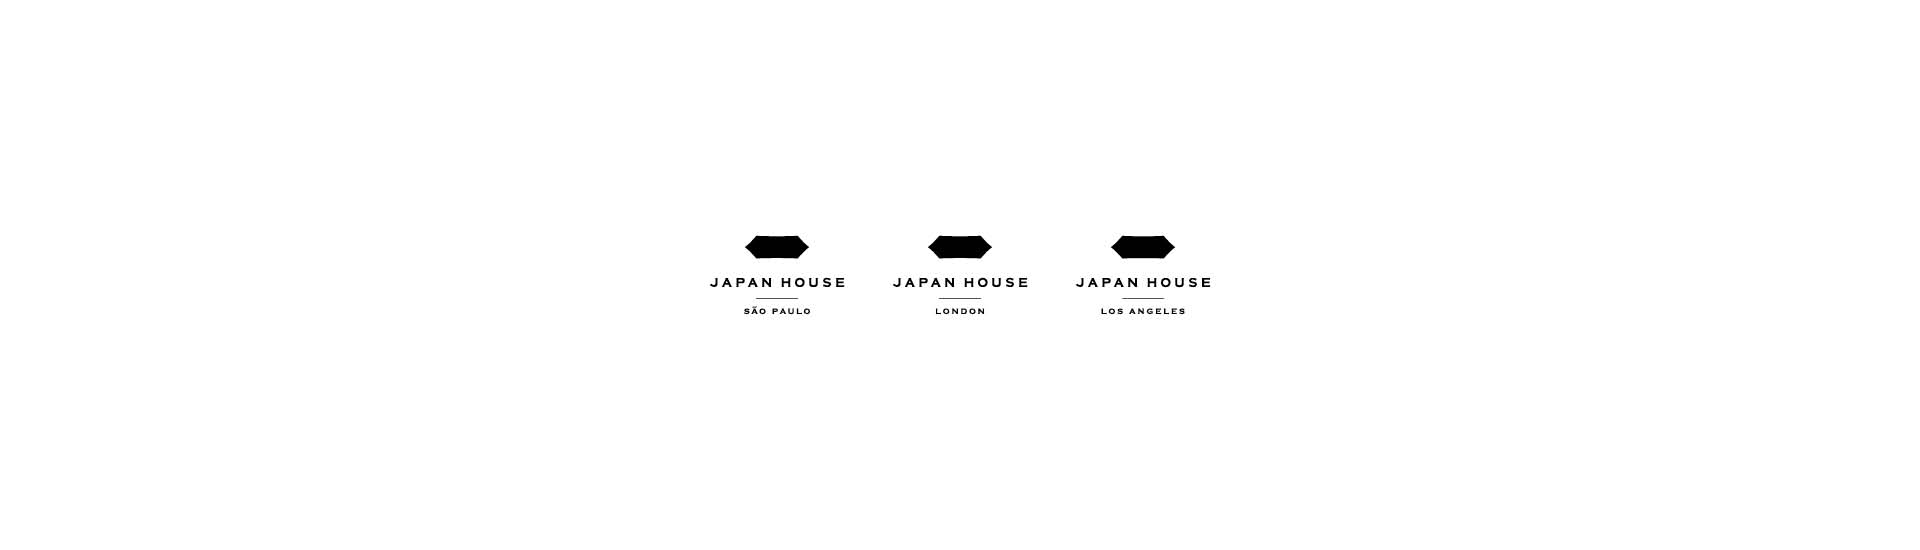 Logos Japan House São Paulo, Japan House London e Japan House Los Angeles, da esquerda para a direita